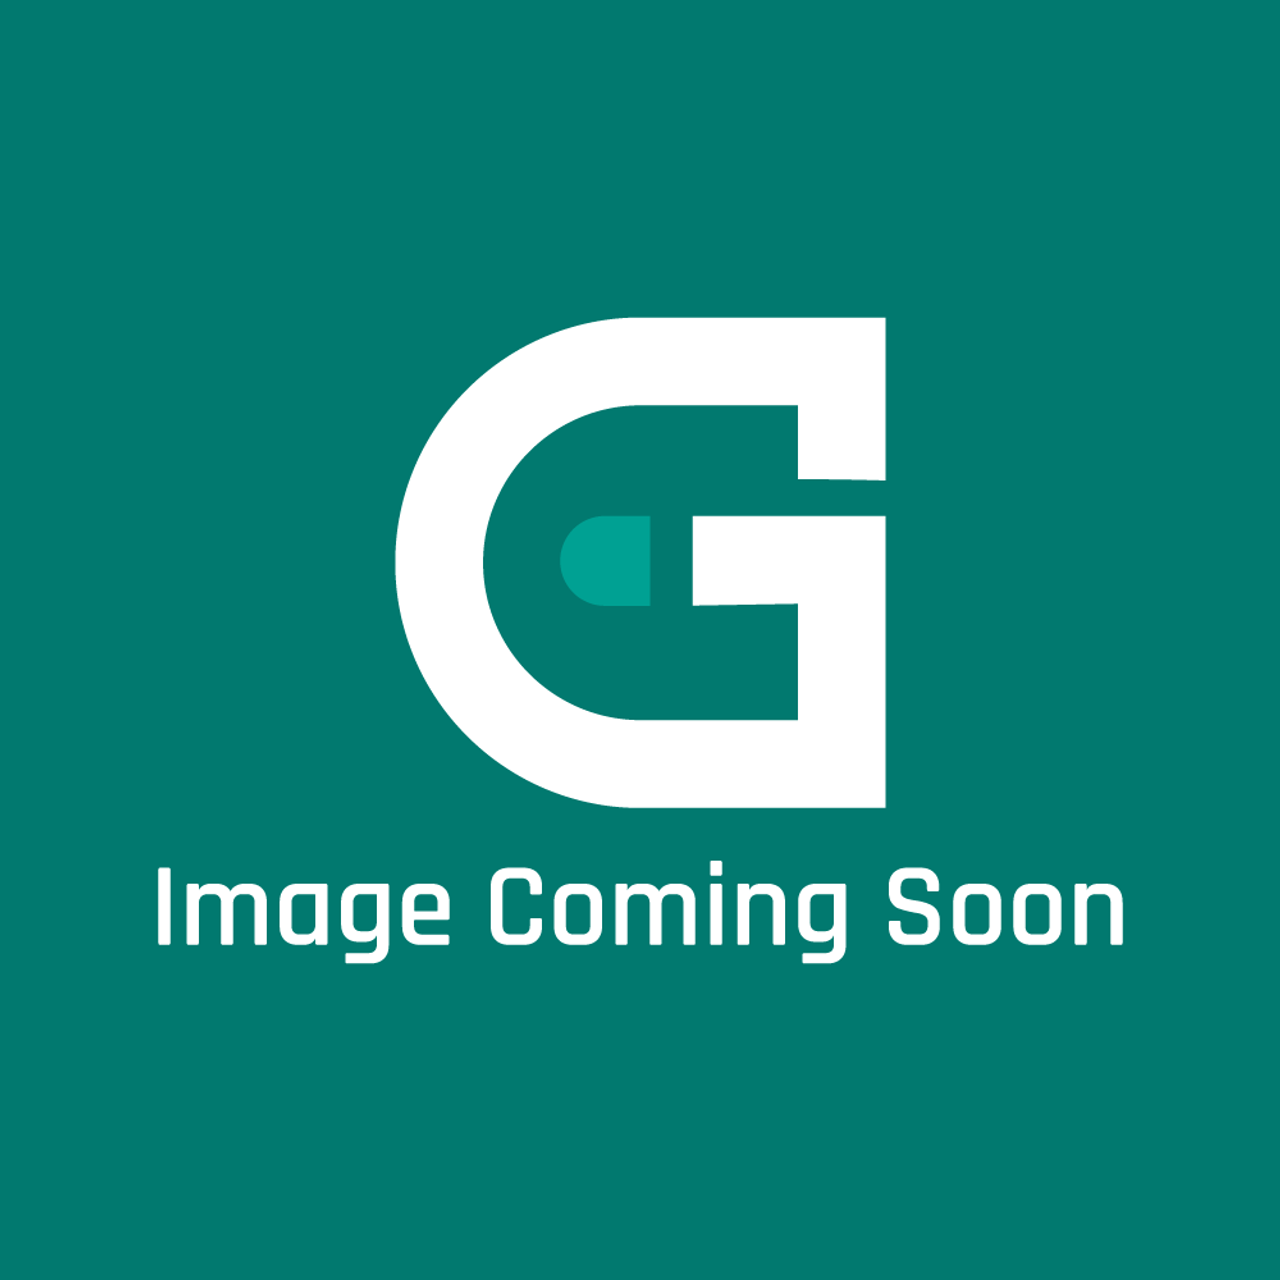 Frigidaire - Electrolux 5304526367 Latch Door - Image Coming Soon!